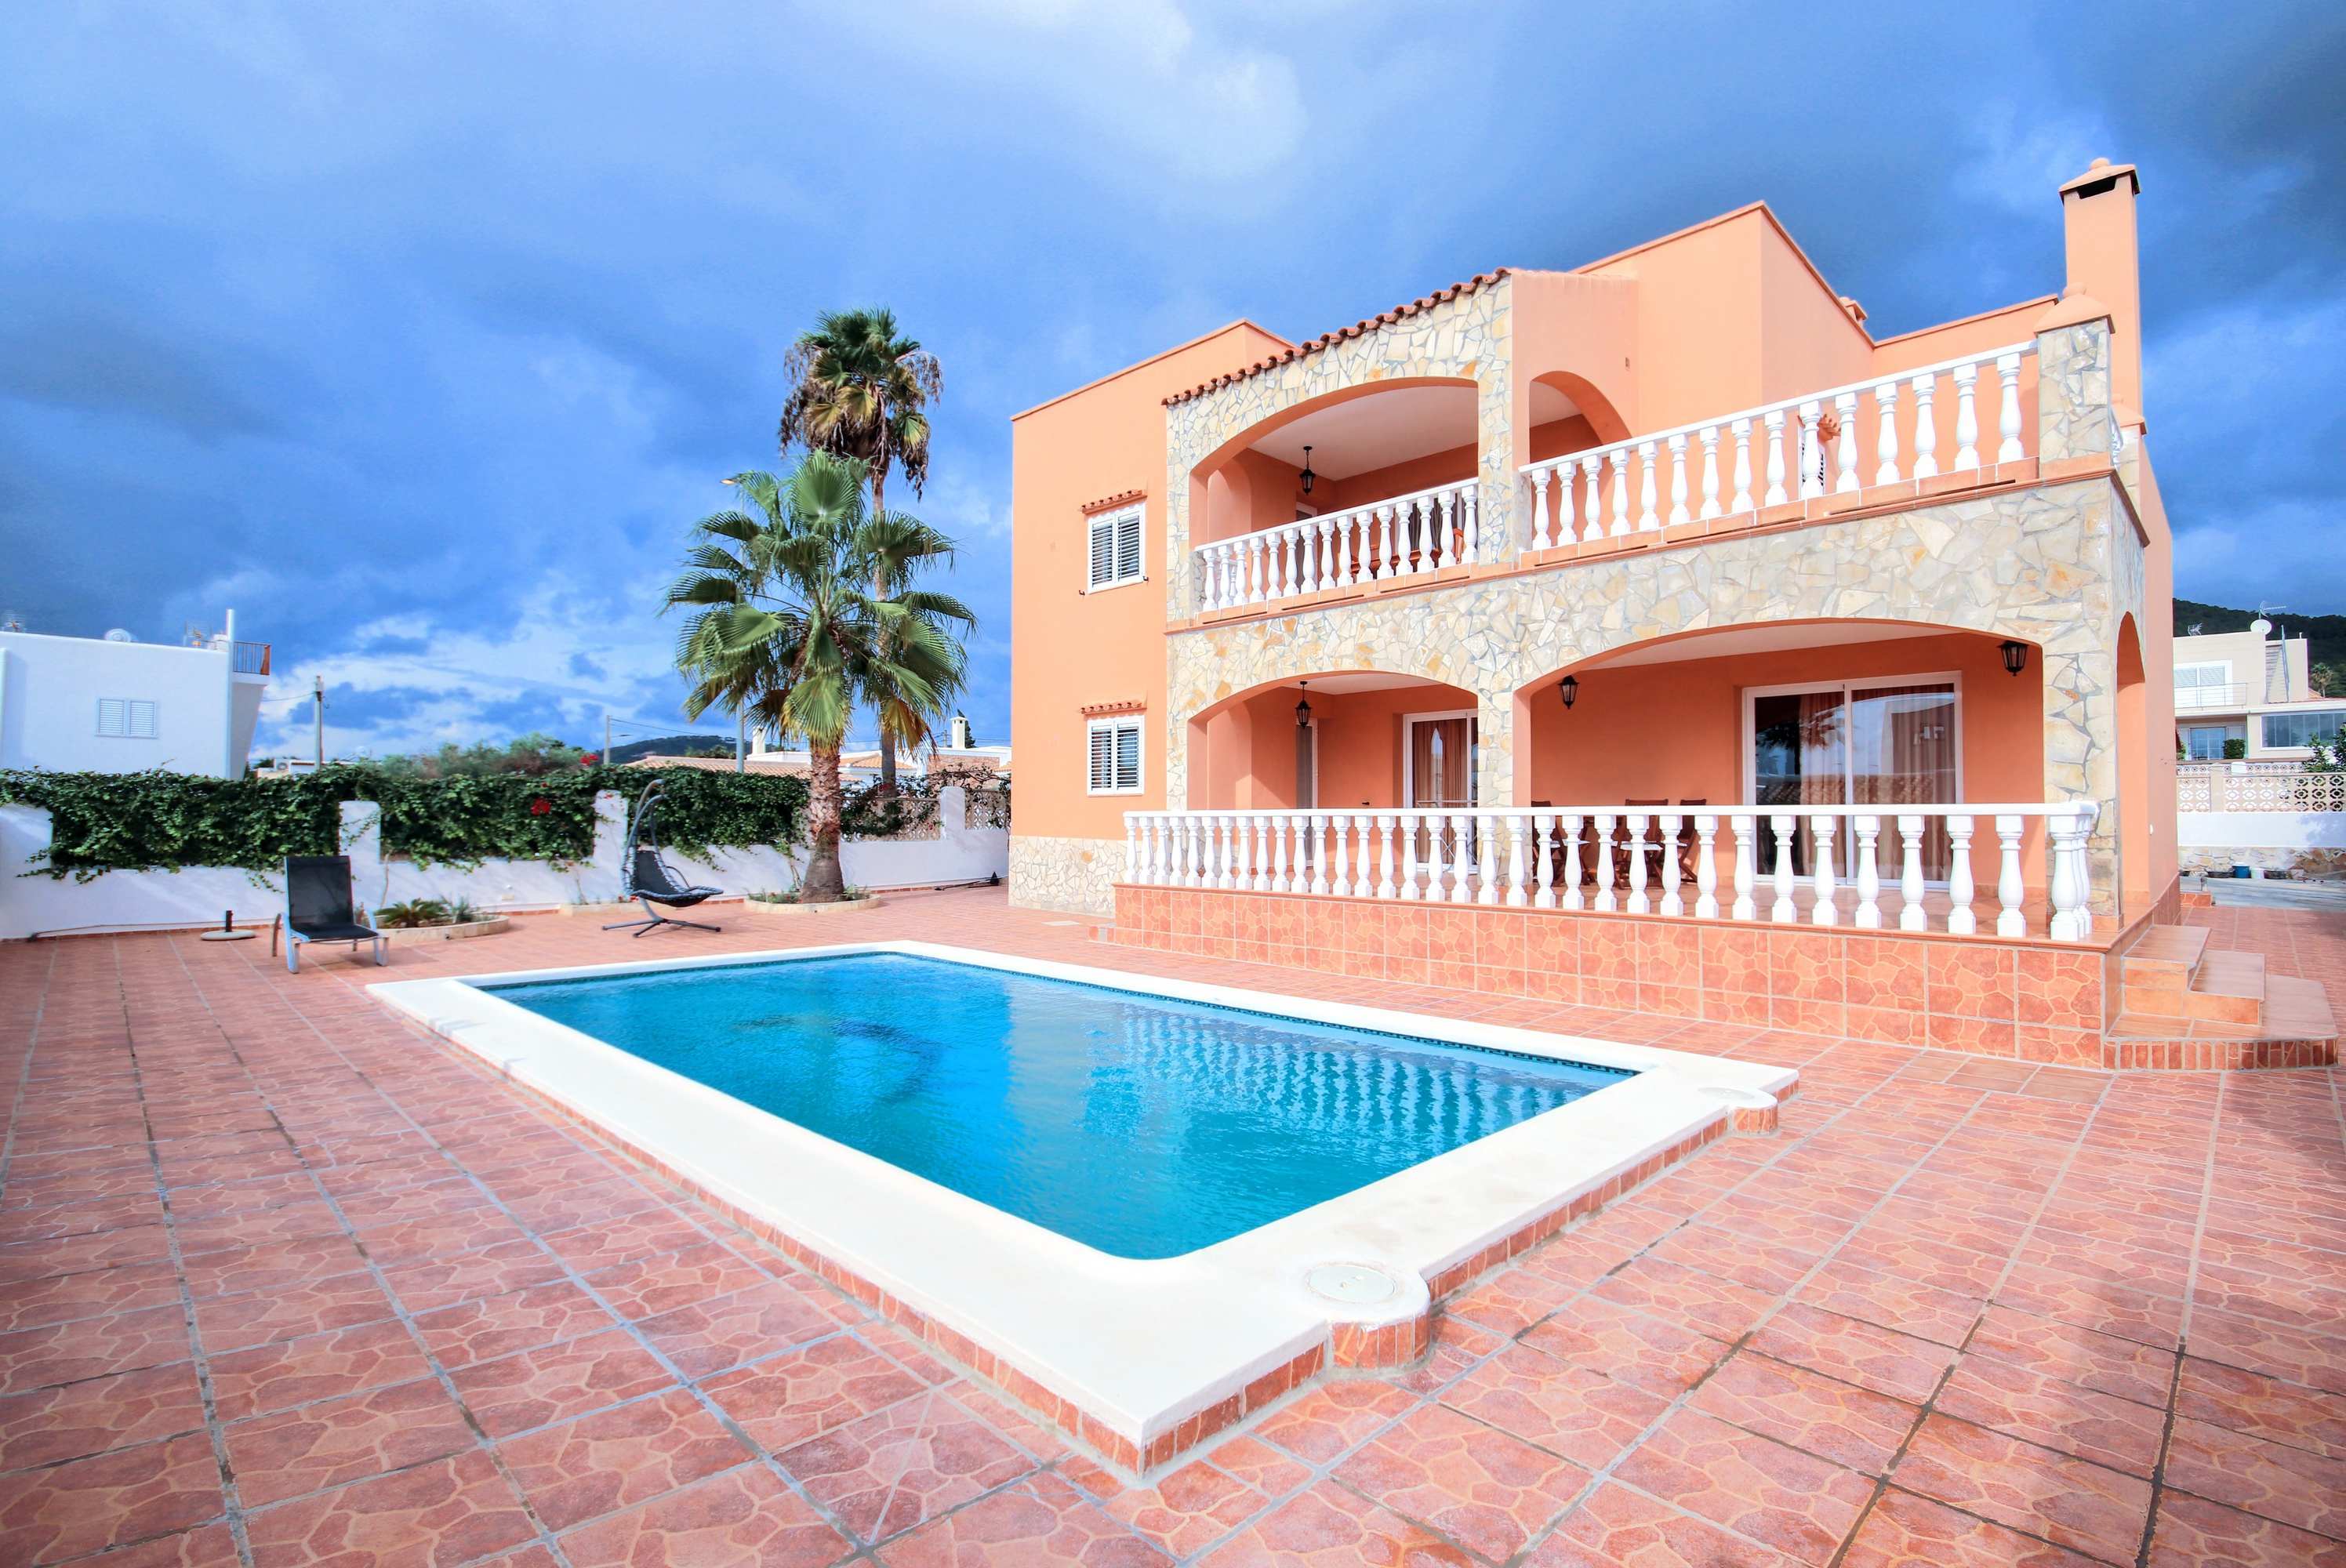 Schönes Haus mit privatem Pool 5 Minuten von Ibiza entfernt